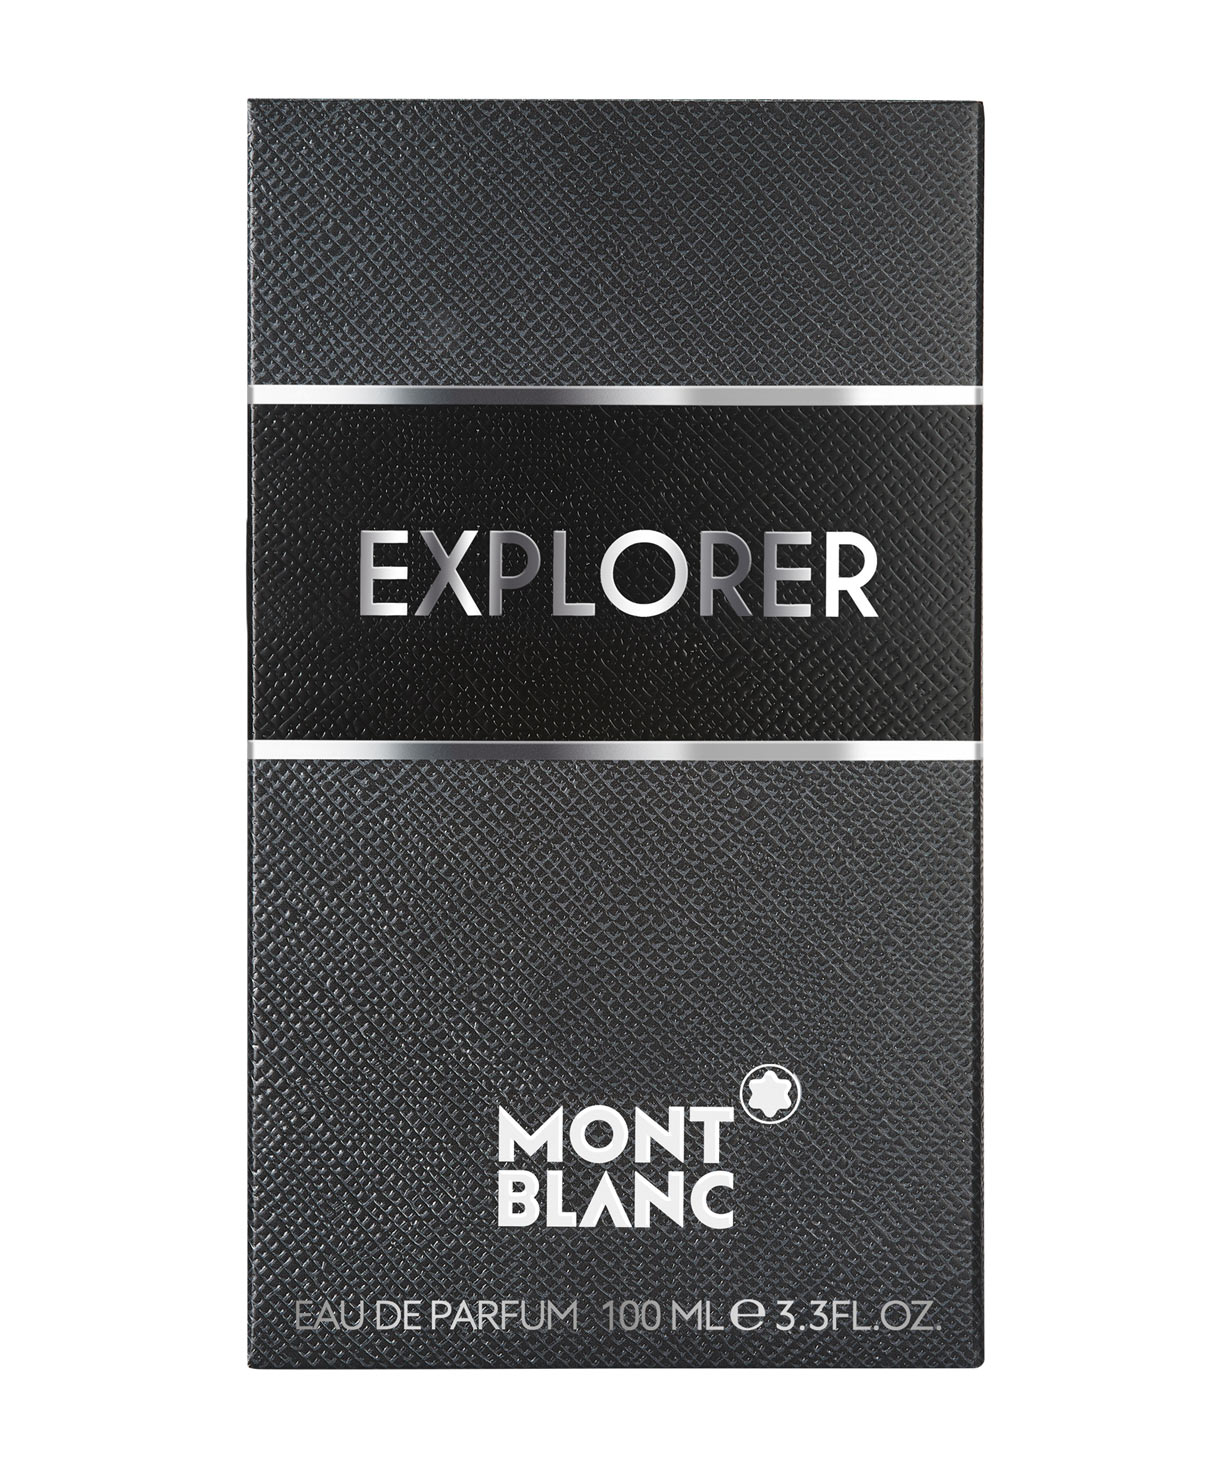 Perfume «Montblanc» Explorer, for men, 100 ml